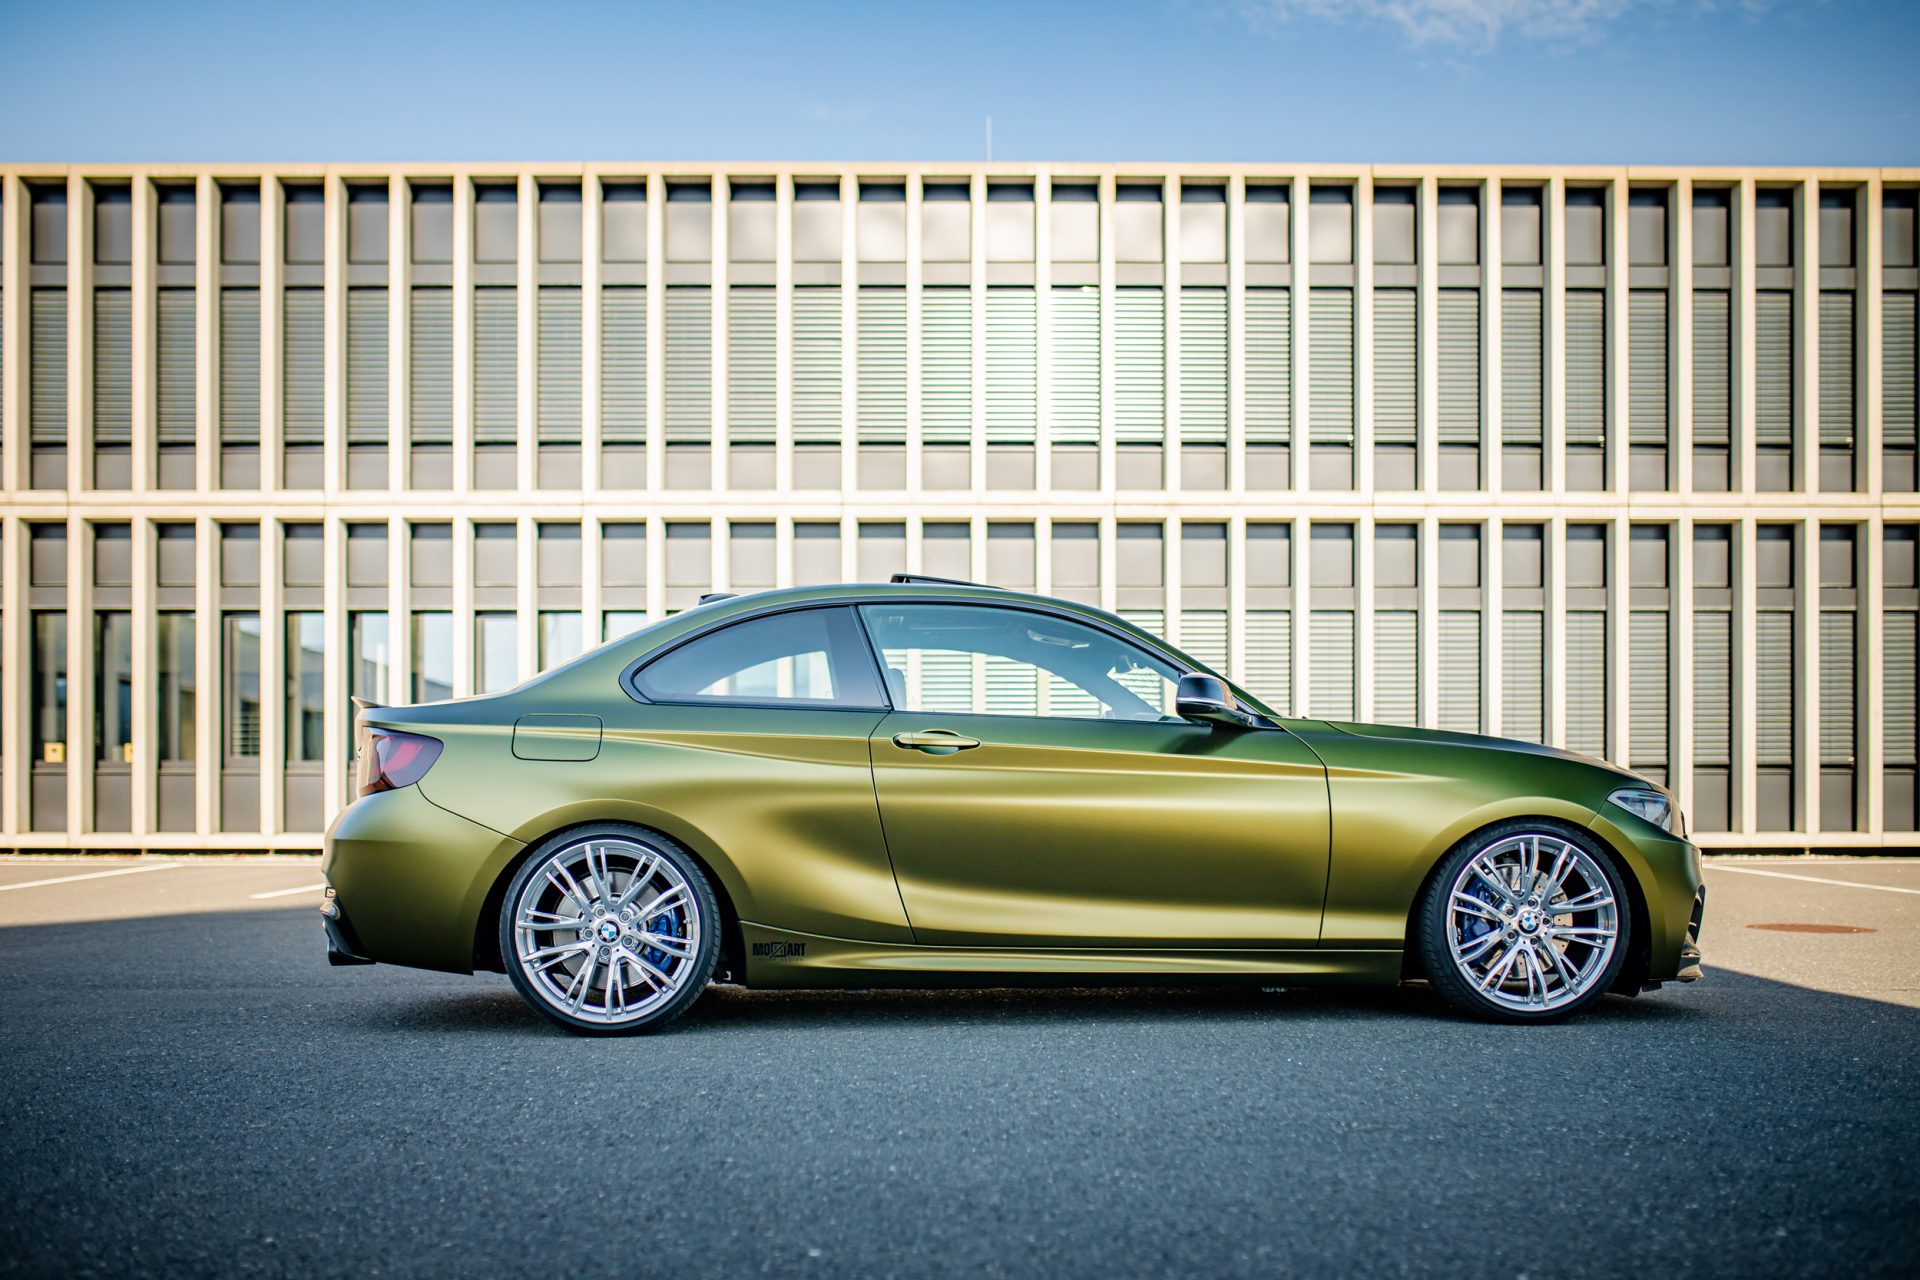 Ein zweier BMW voll foliert in einer gold-grün schimmernden speziellen flipflop Folie mit einem seidenmattem Finish. Autofolierung in Salzburg